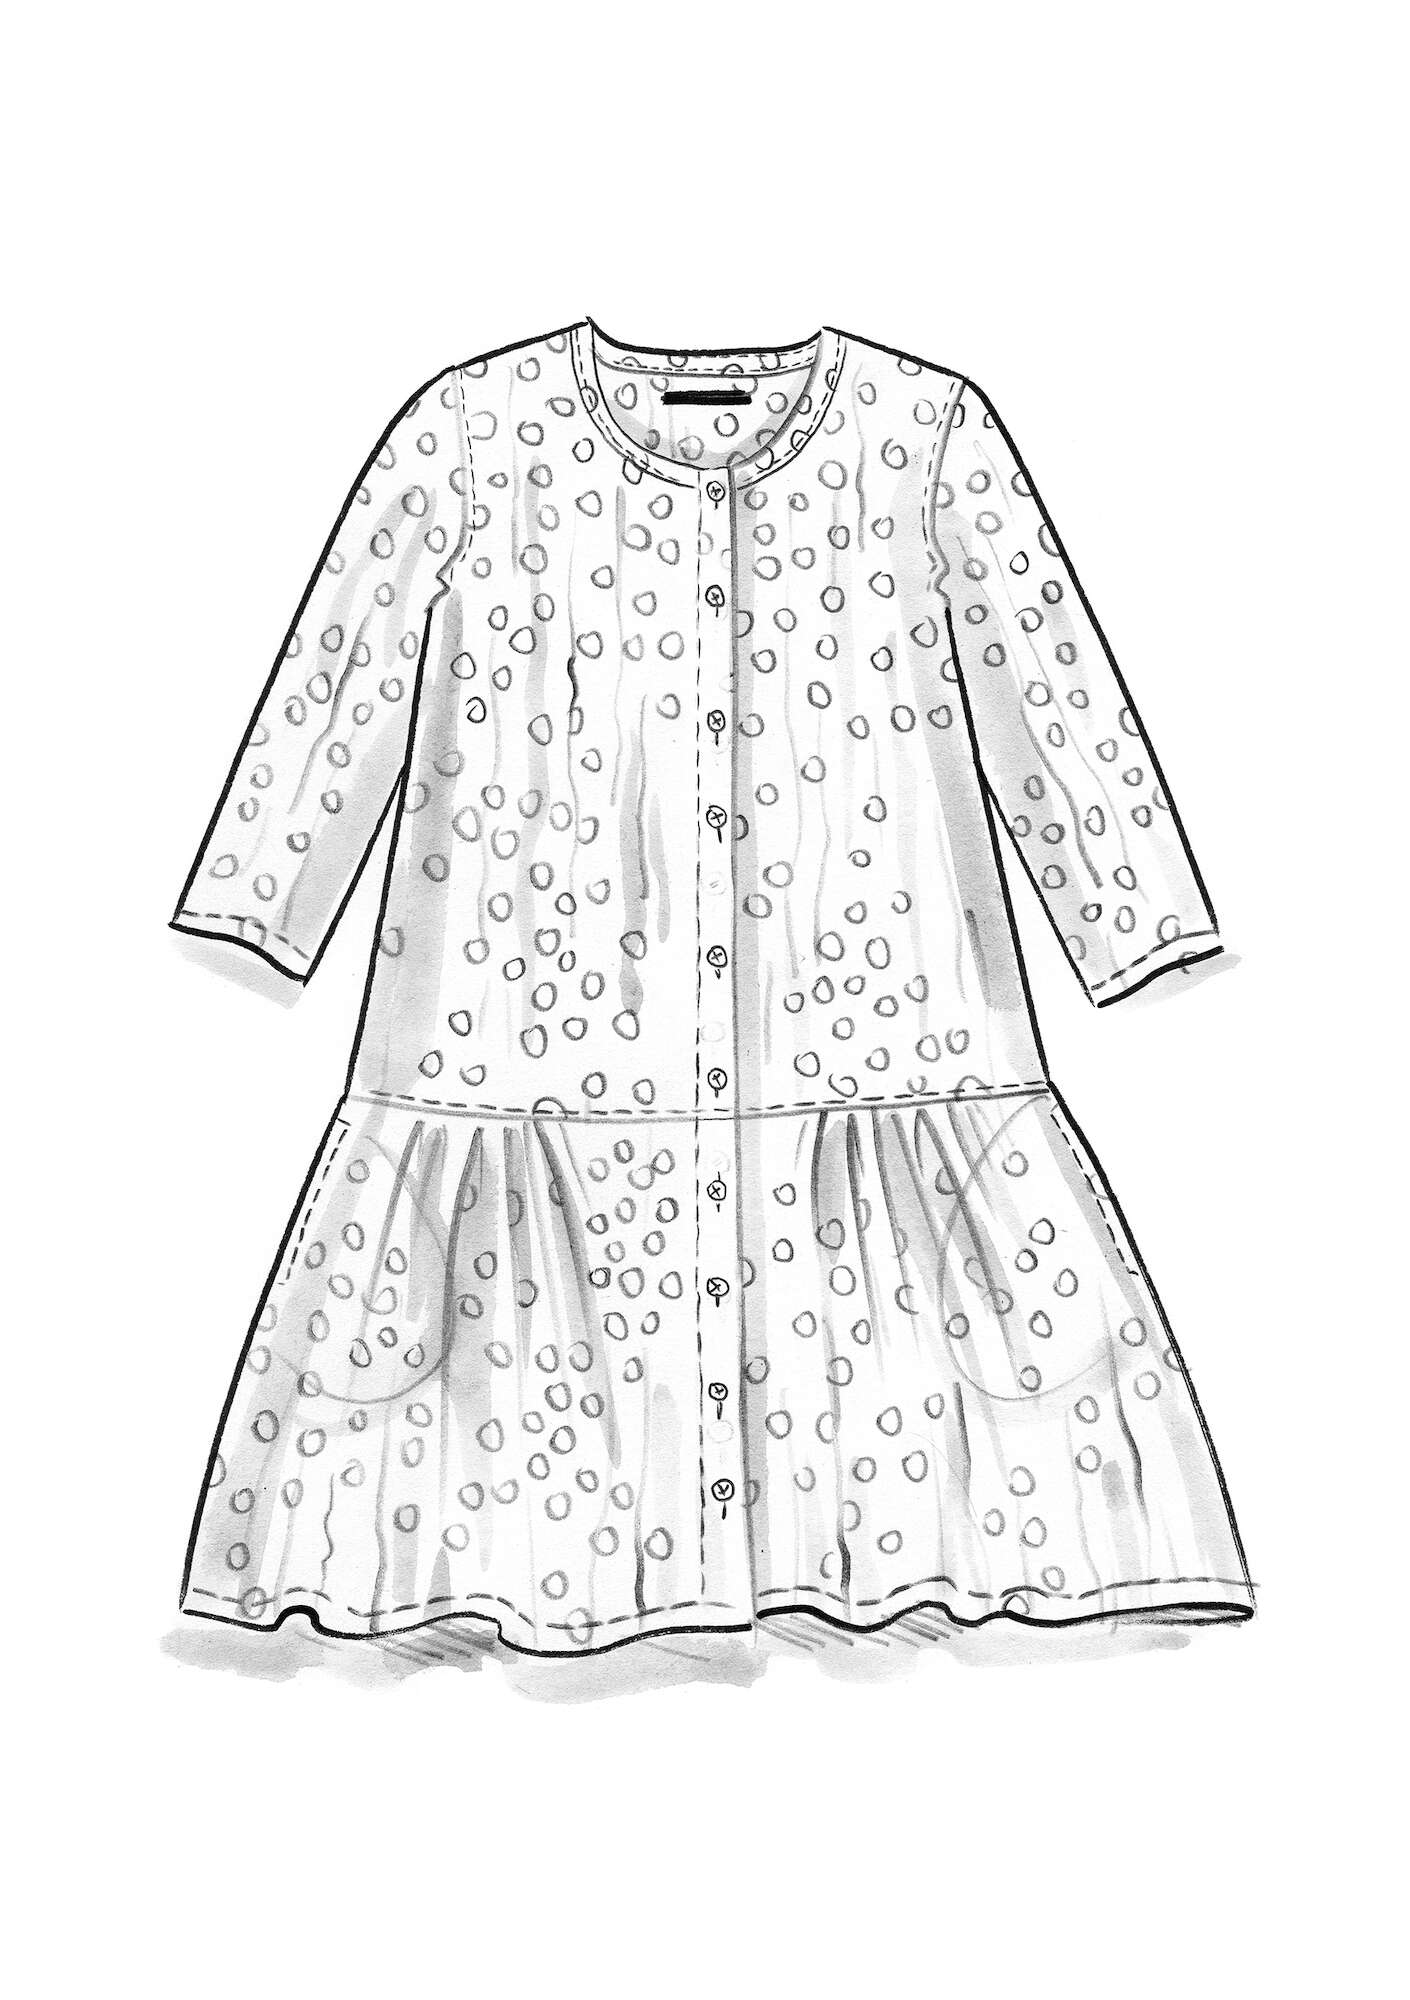 Vevd kjole «Alice» i økologisk bomull jerngrå/mønstret